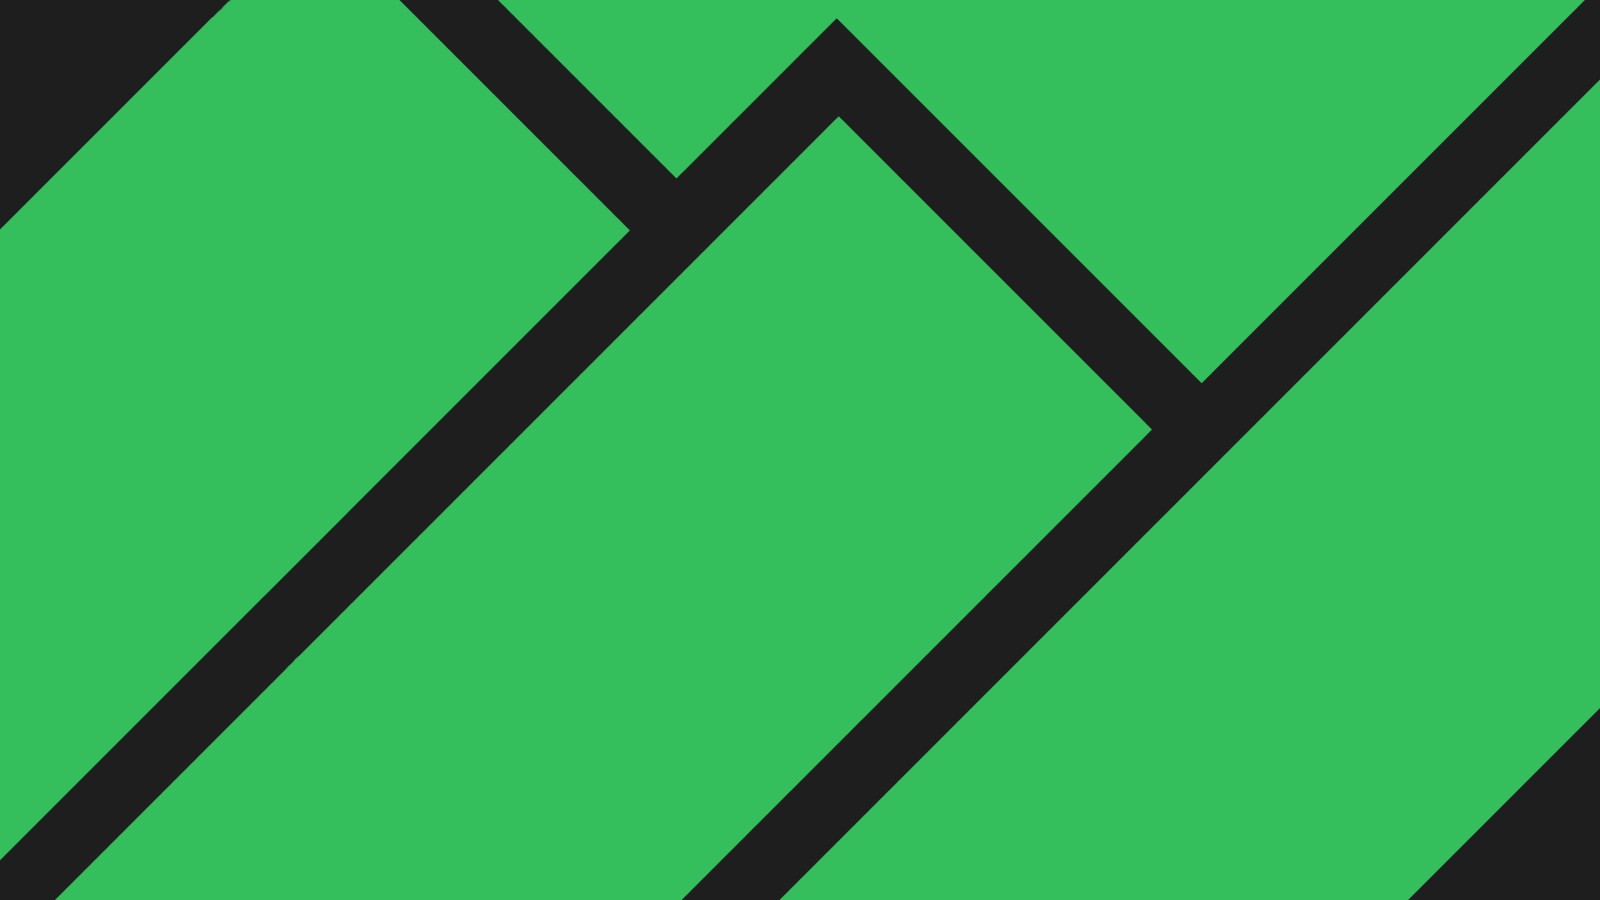 线, 绿色, 极简主义, 跳闸, Manjaro Linux, 材料设计, 平面